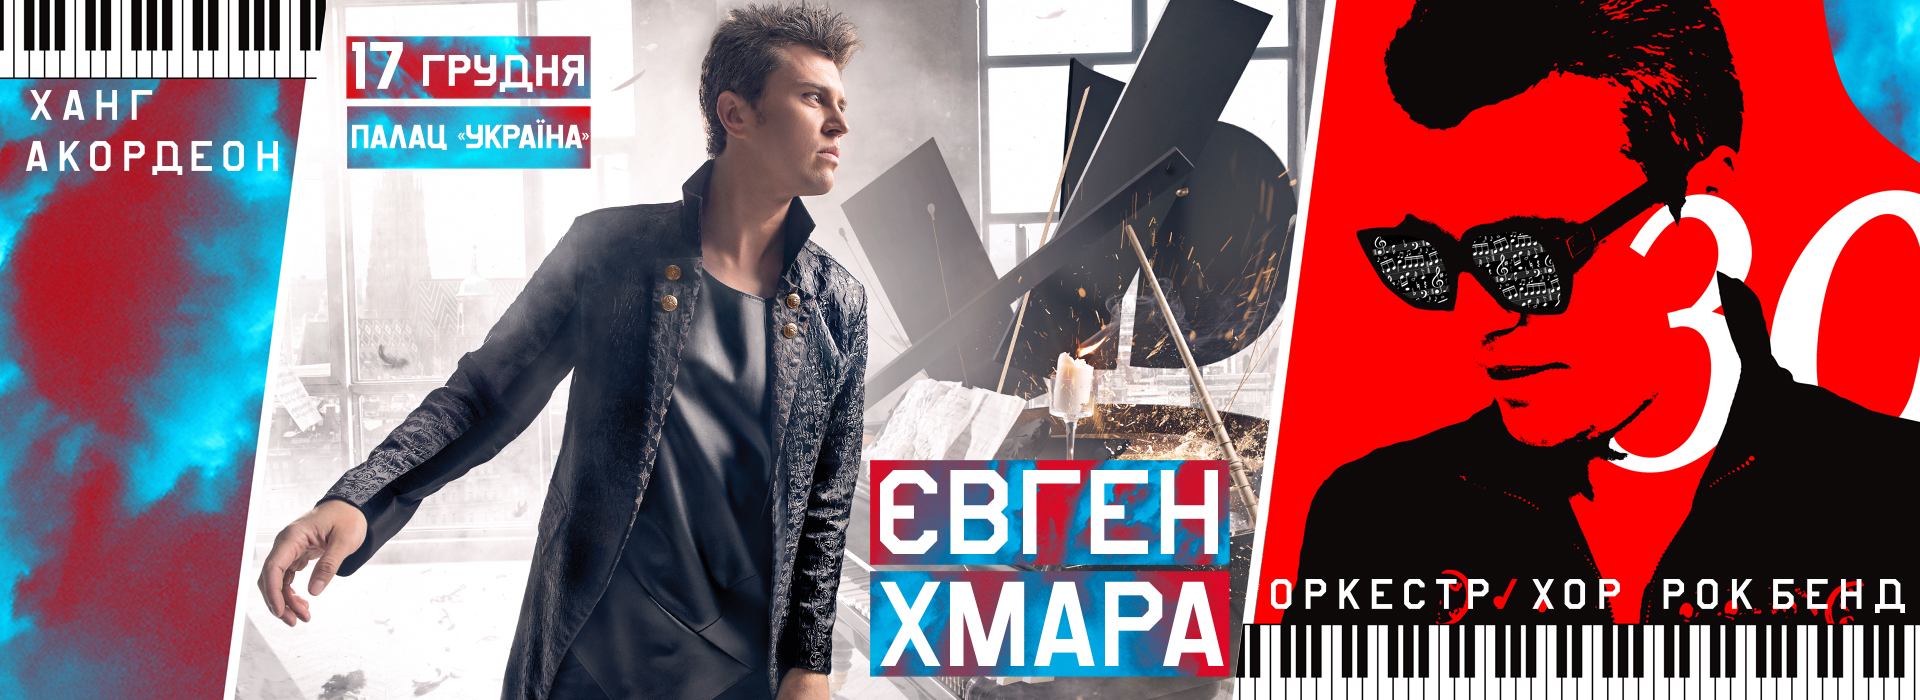 Концерт Киев афиша